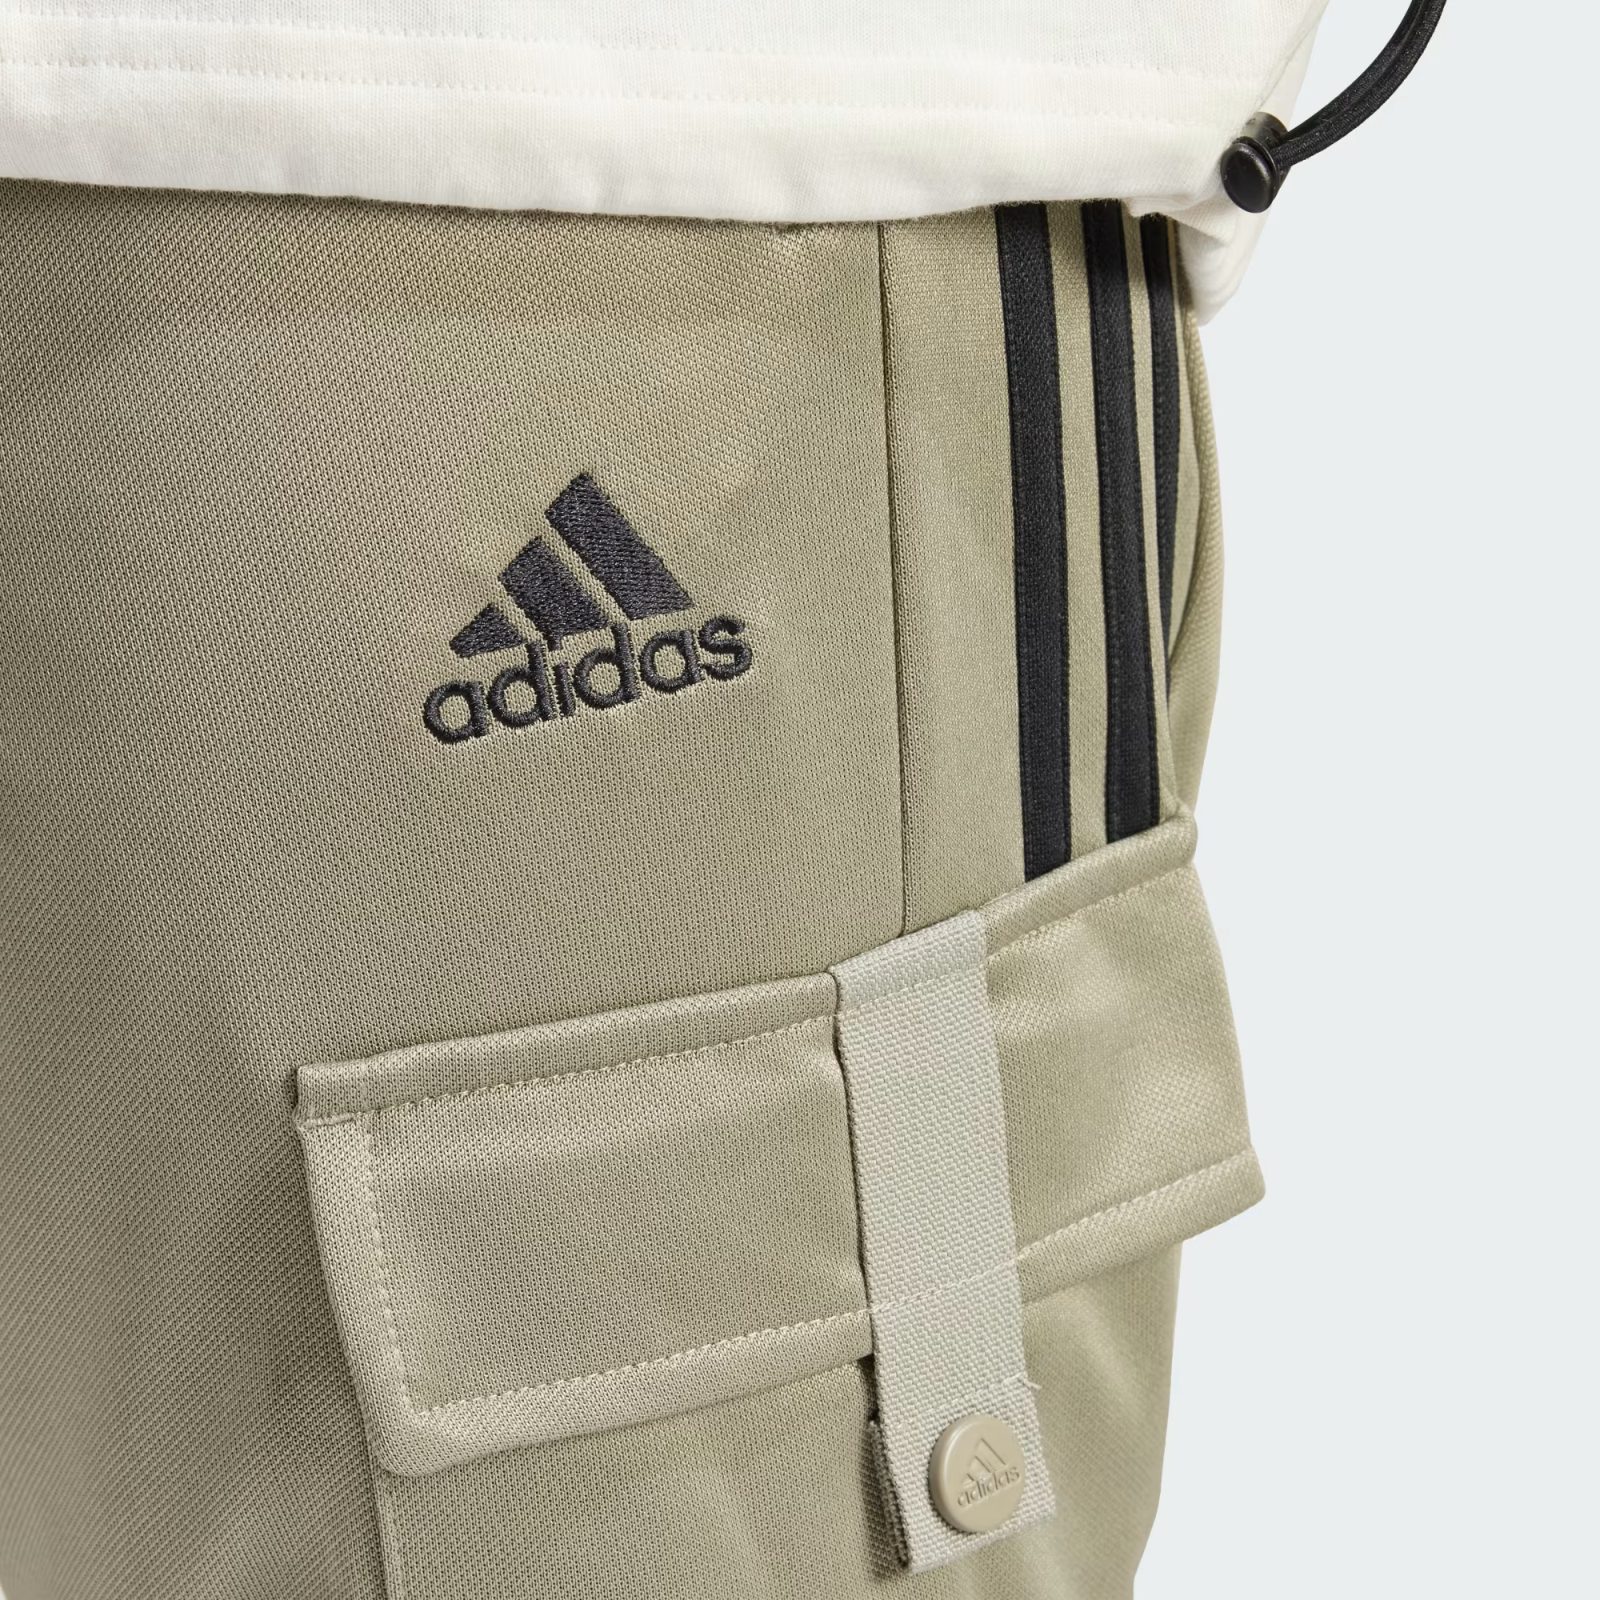 Adidas Uomo Tiro similar Cargo Comfort and items 50 Pantaloni